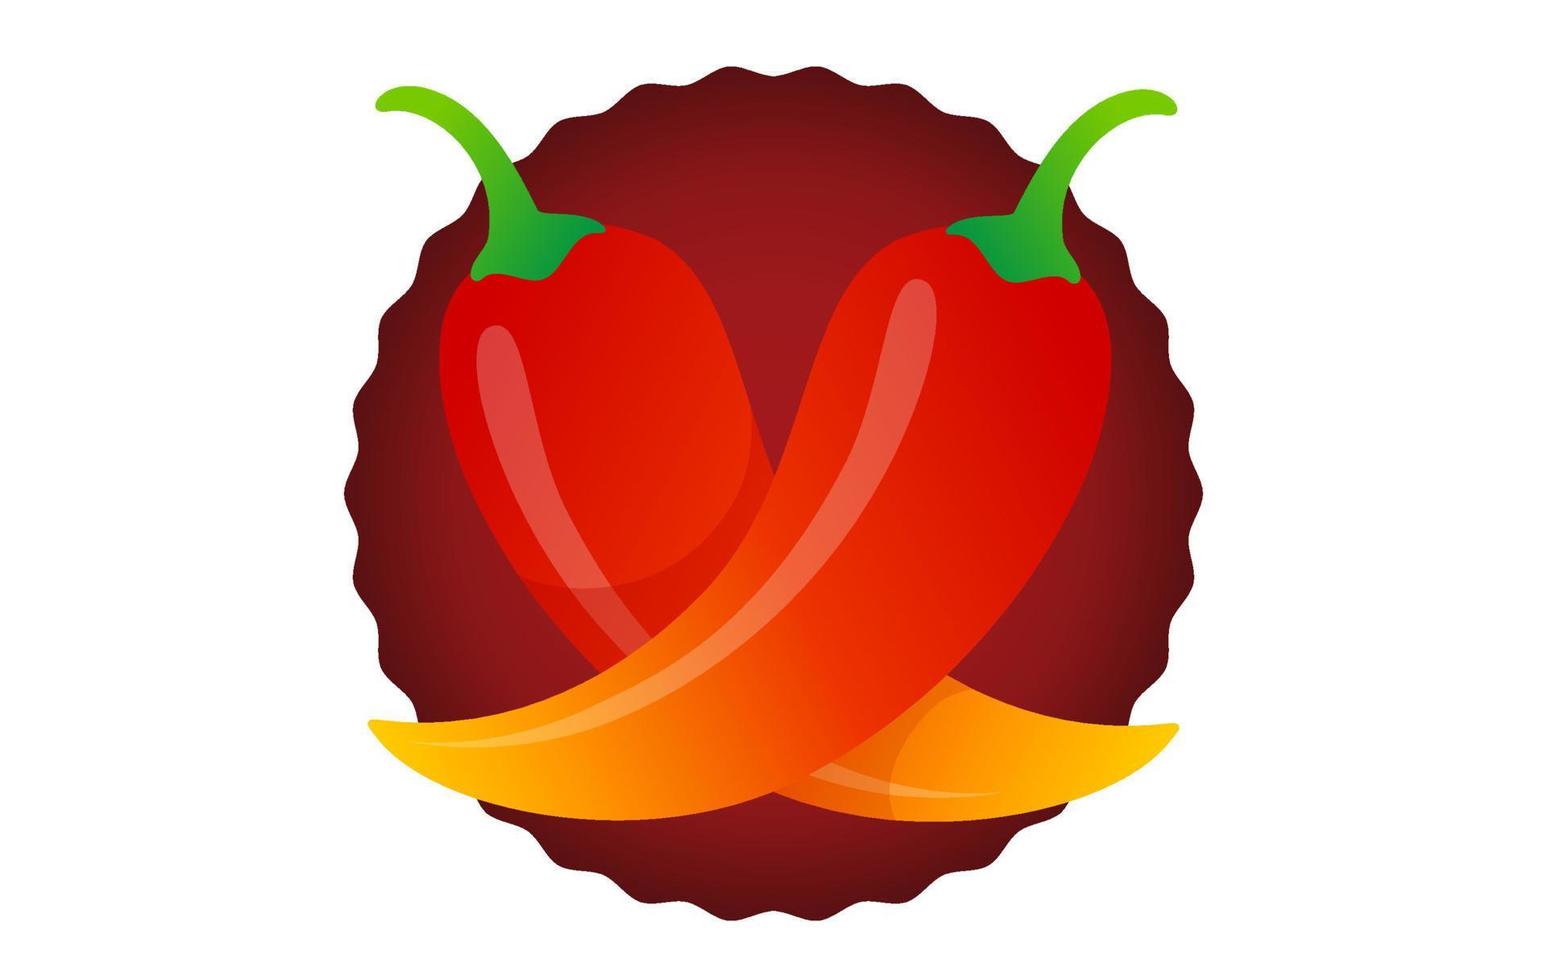 vektor ikon av röd chilipeppar